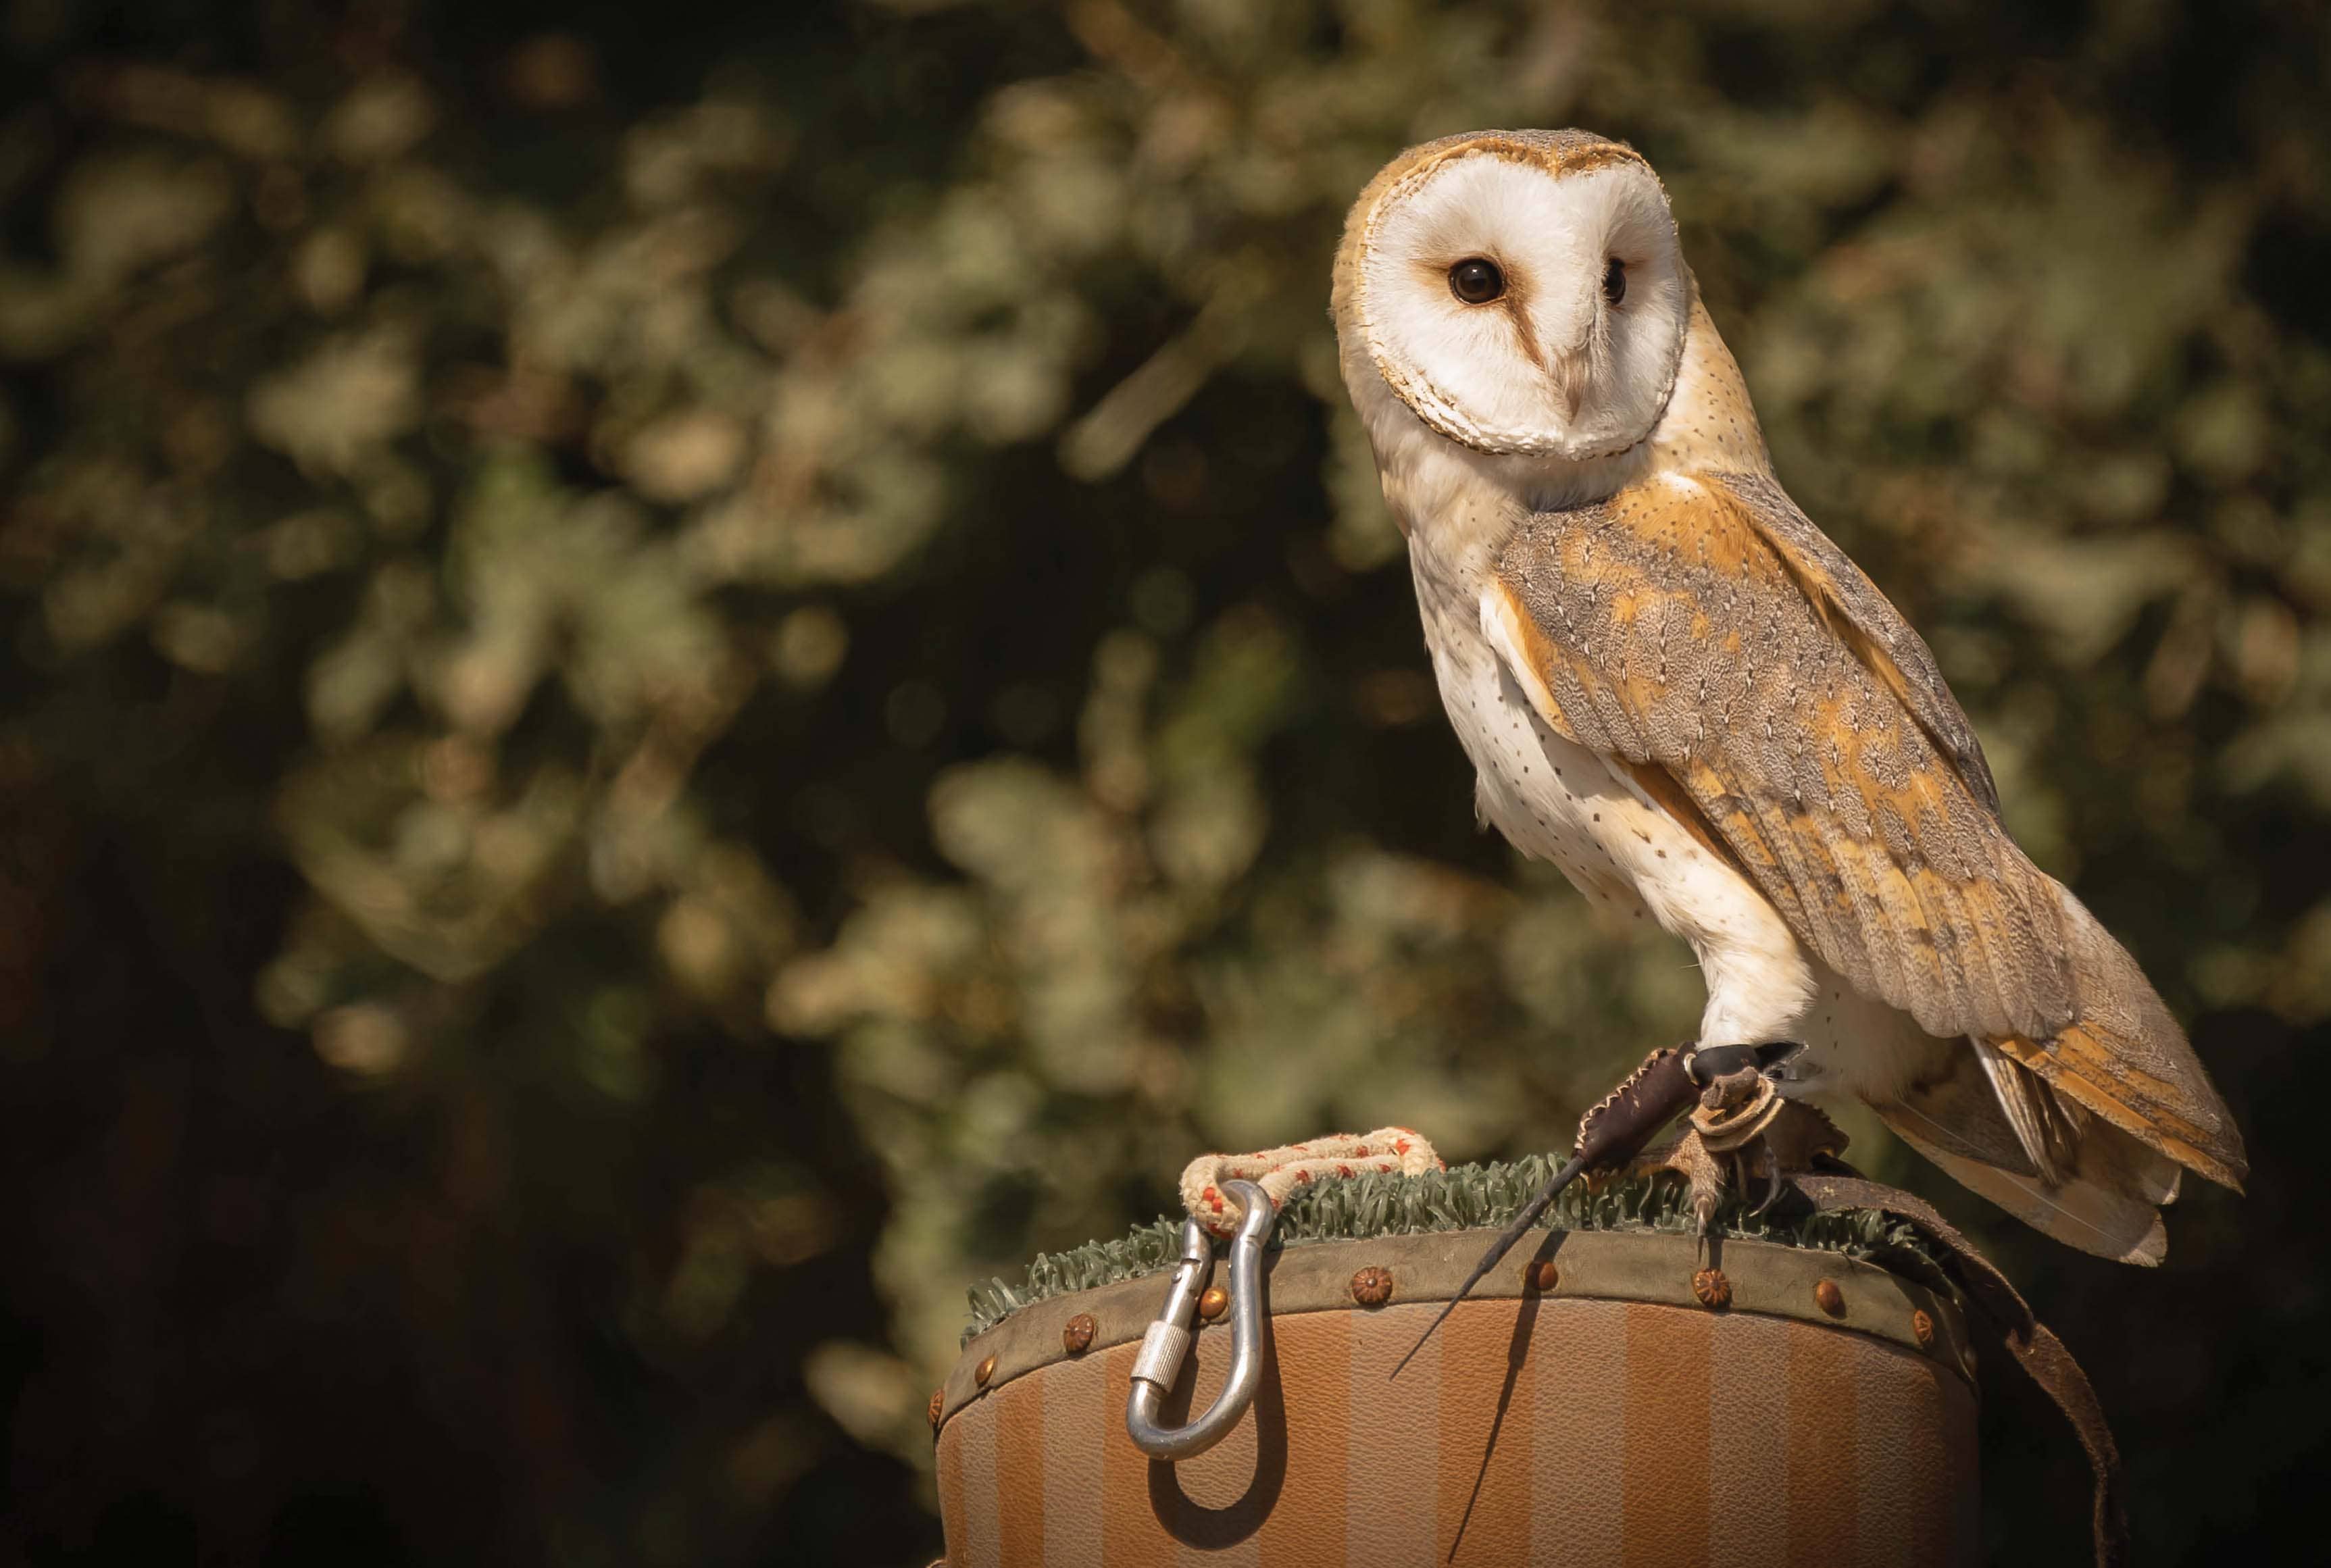 common-barn-owl-while-feeding-on-a-wooden-hemp-against-a-dark-b